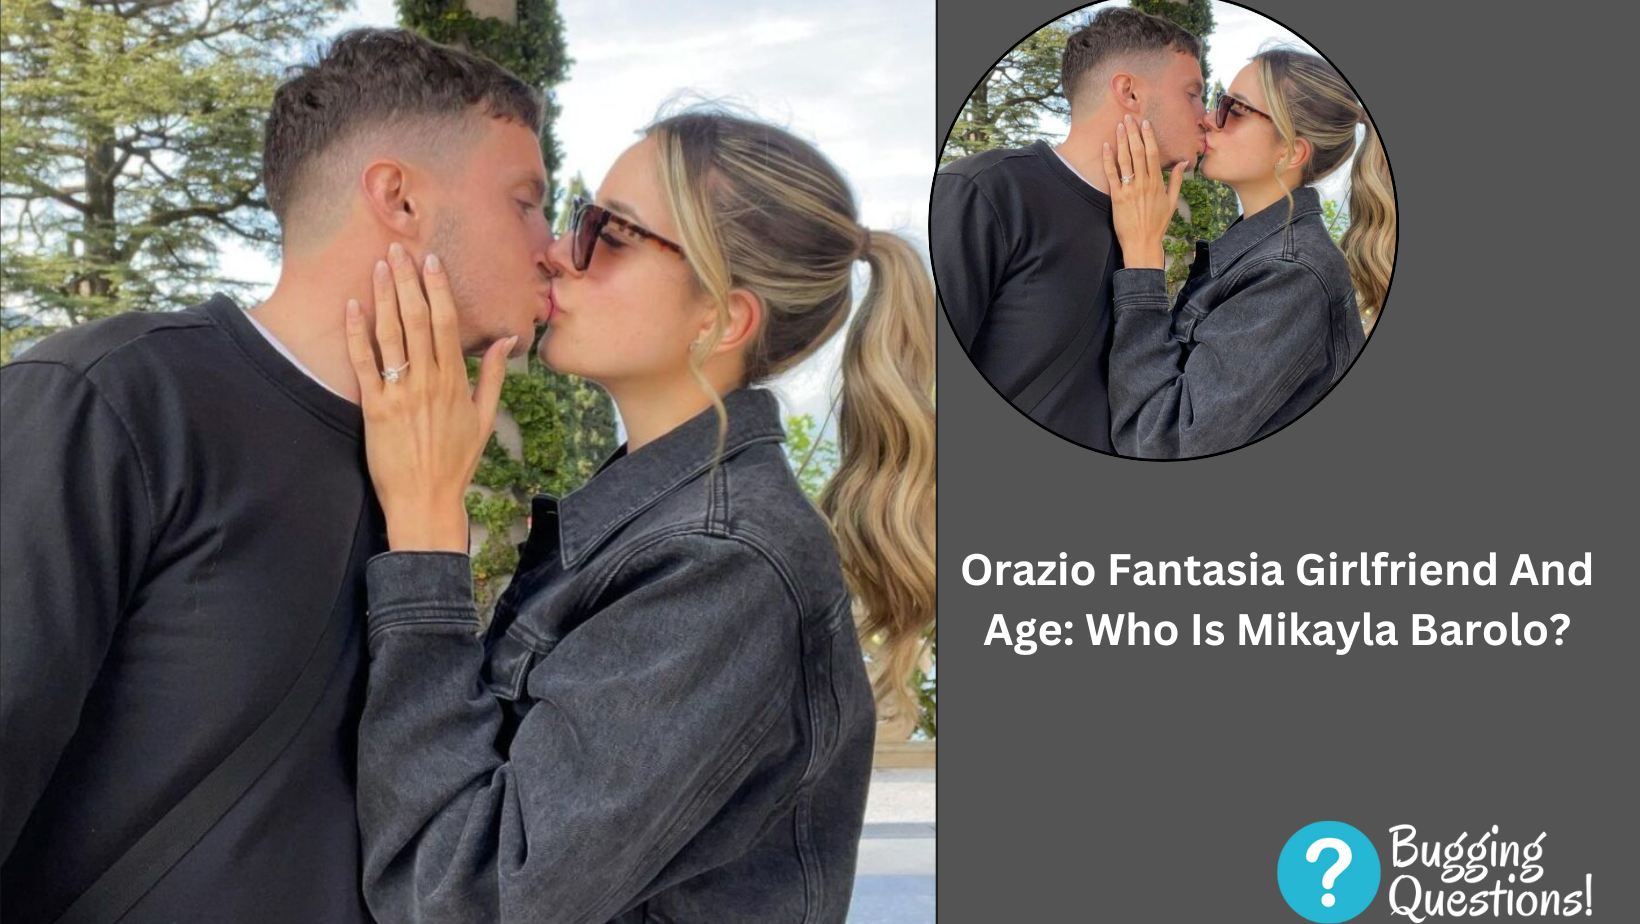 Orazio Fantasia Girlfriend And Age: Who Is Mikayla Barolo?